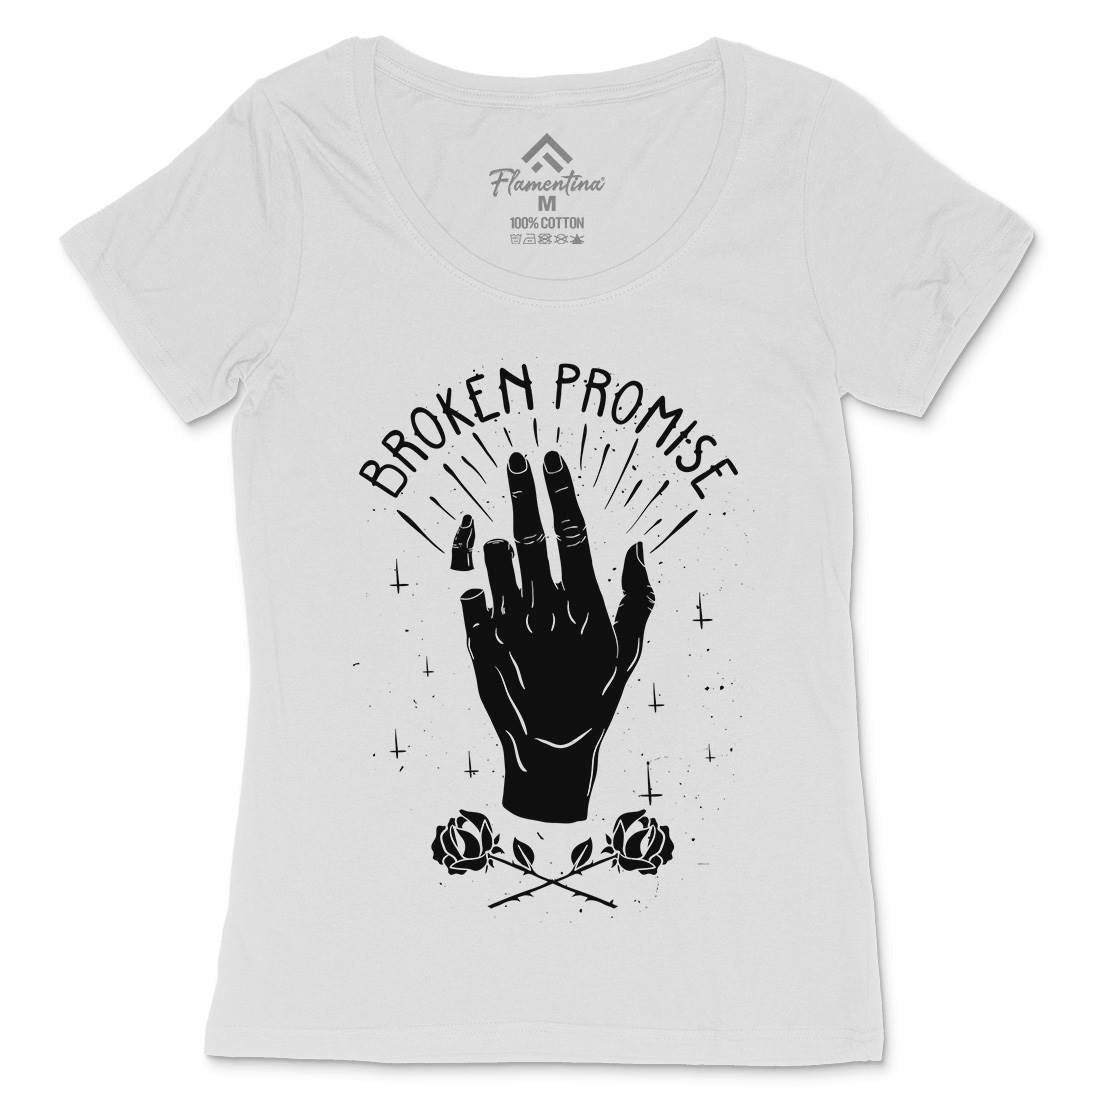 Broken Promise Womens Scoop Neck T-Shirt Retro D447